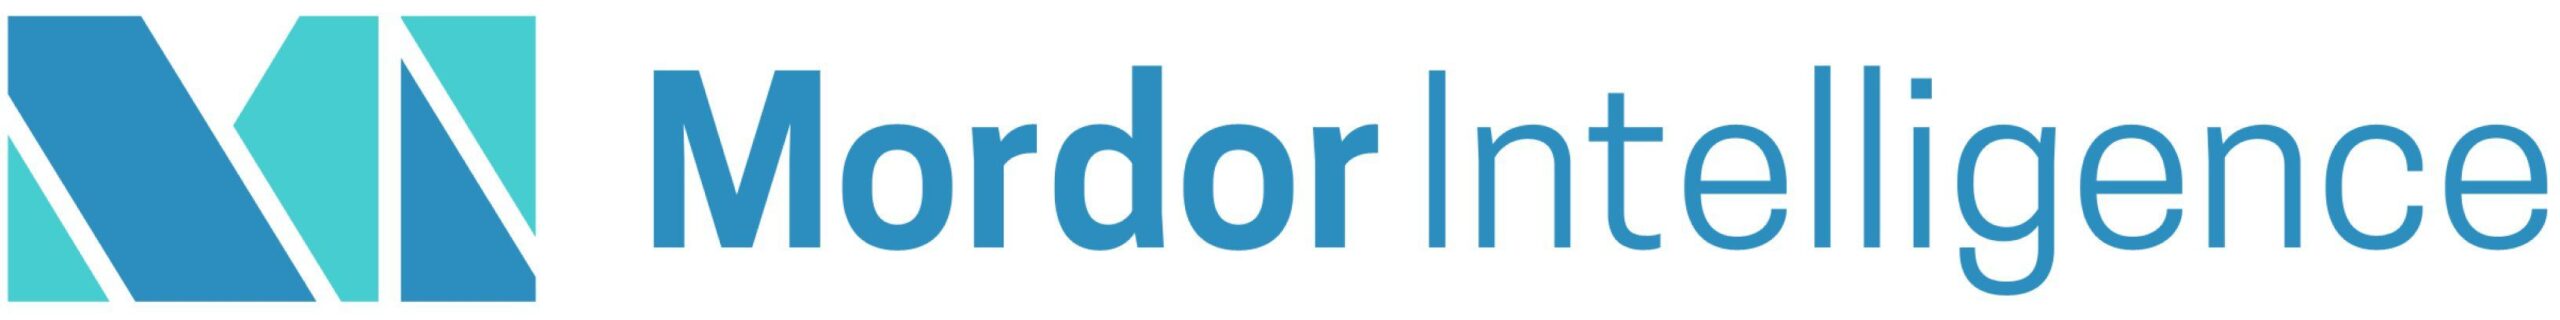 Mordor Intelligence Logo.jpgkeepProtocol EarnFreeCashOnline